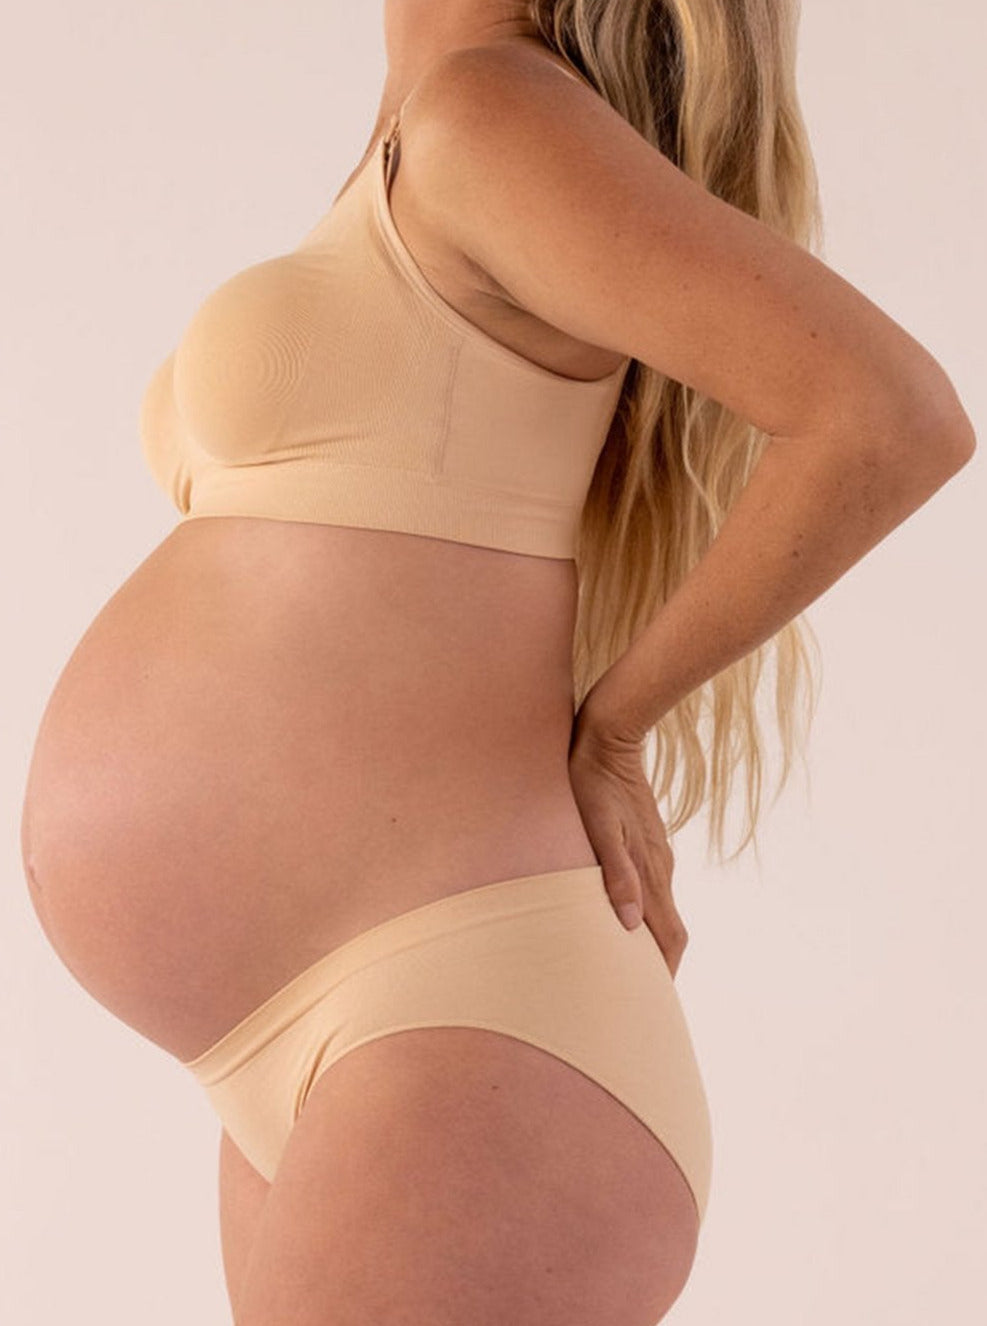 Seamless maternity panties